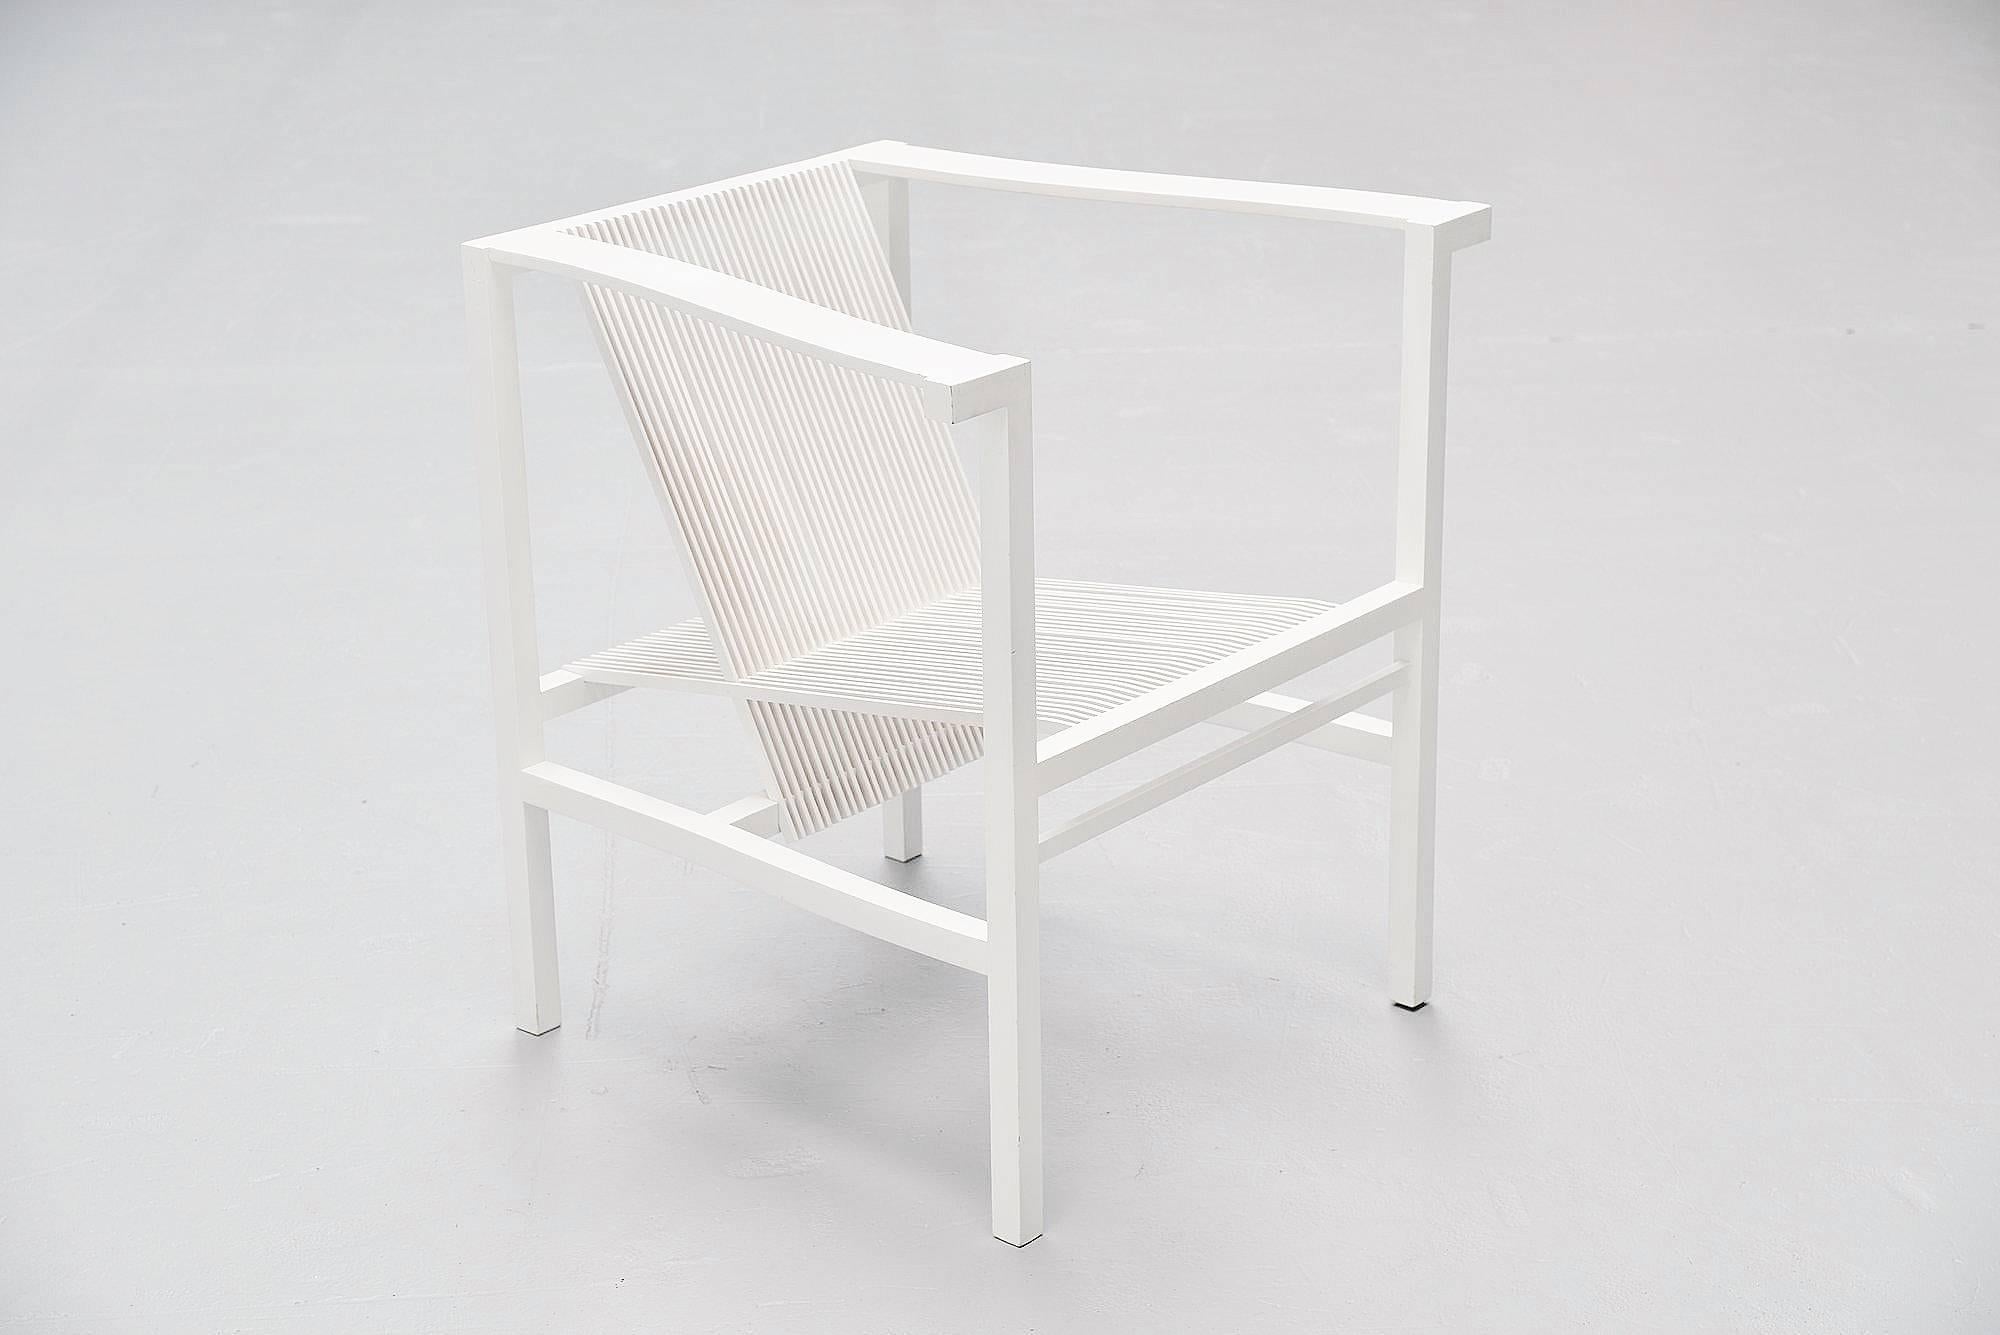 Late 20th Century Ruud Jan Kokke High Slat Chair by Metaform, 1984